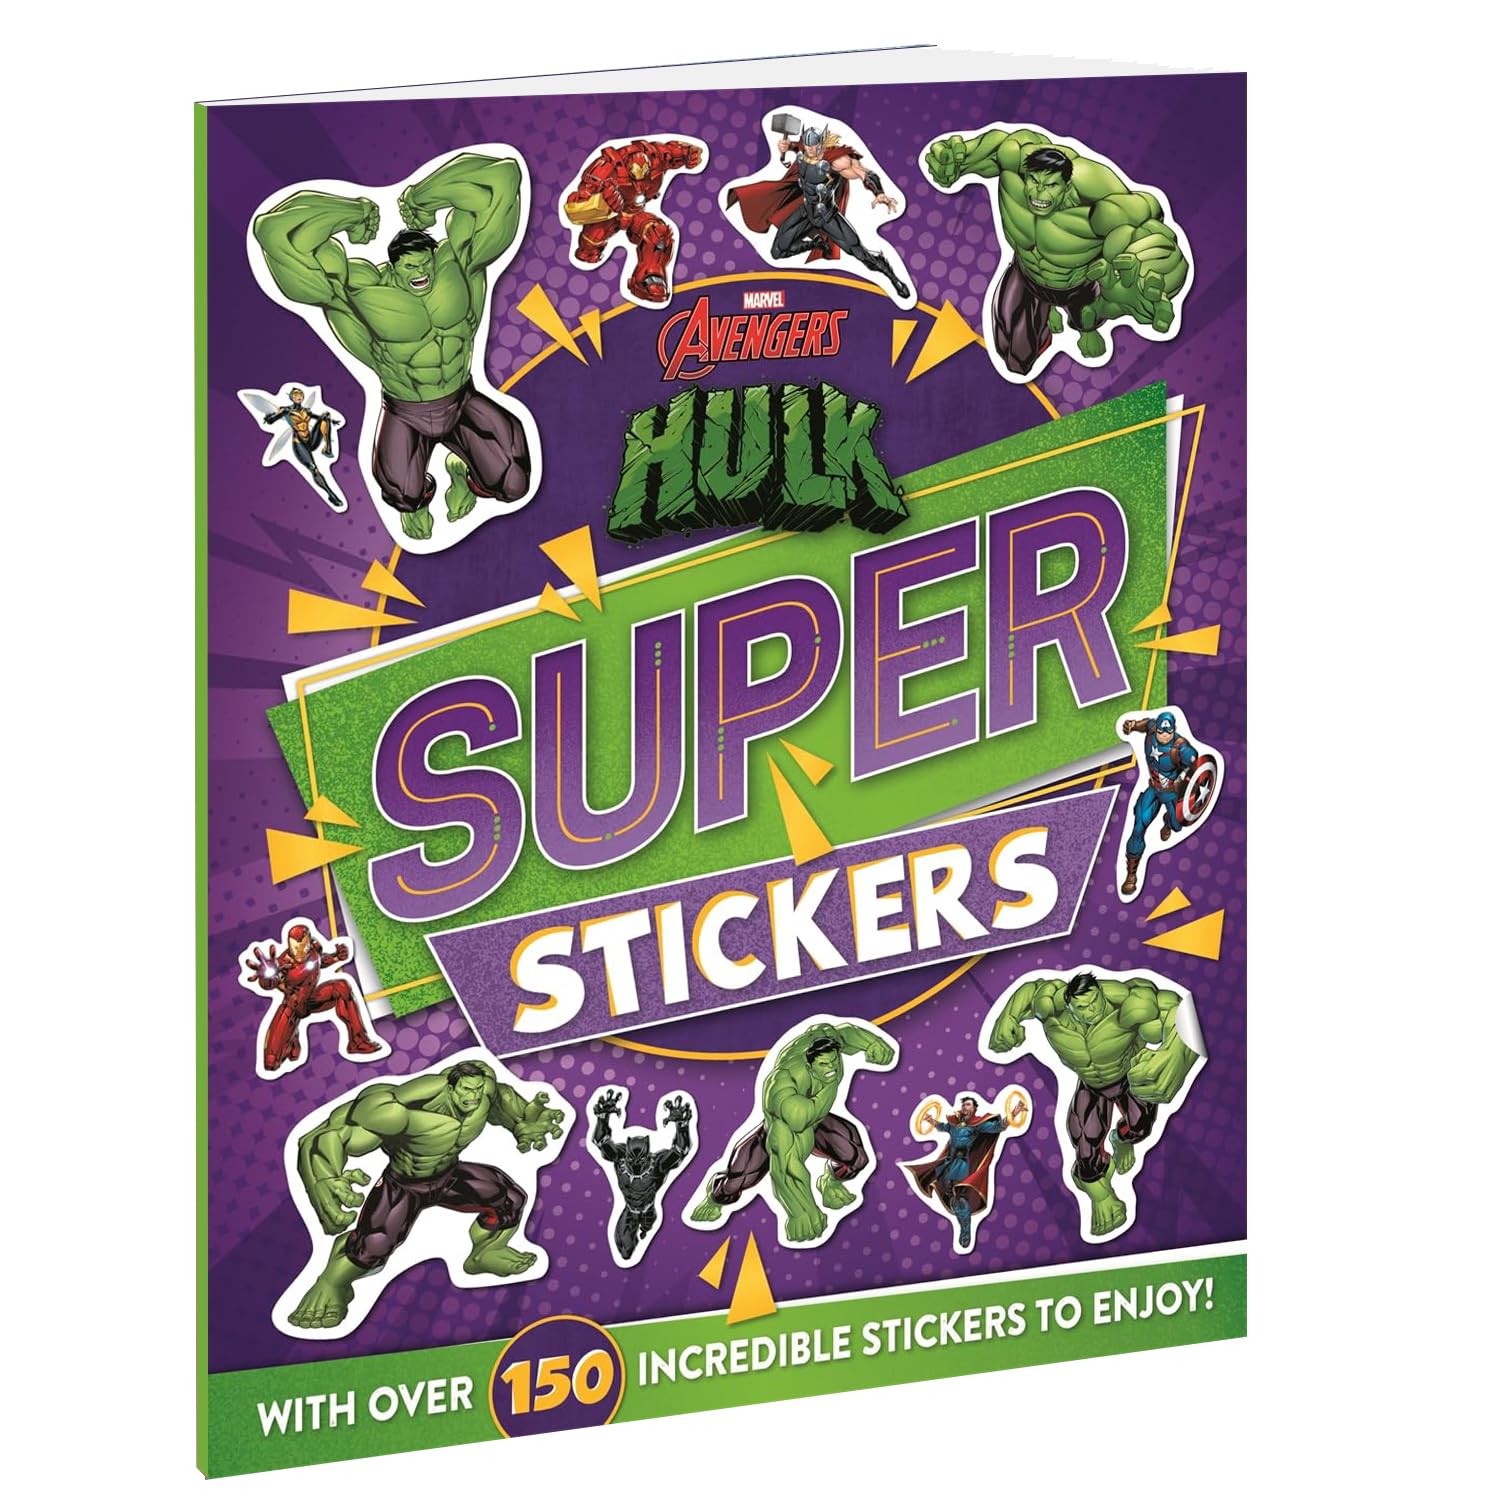 Marvel Avengers Hulk Super : Stickers